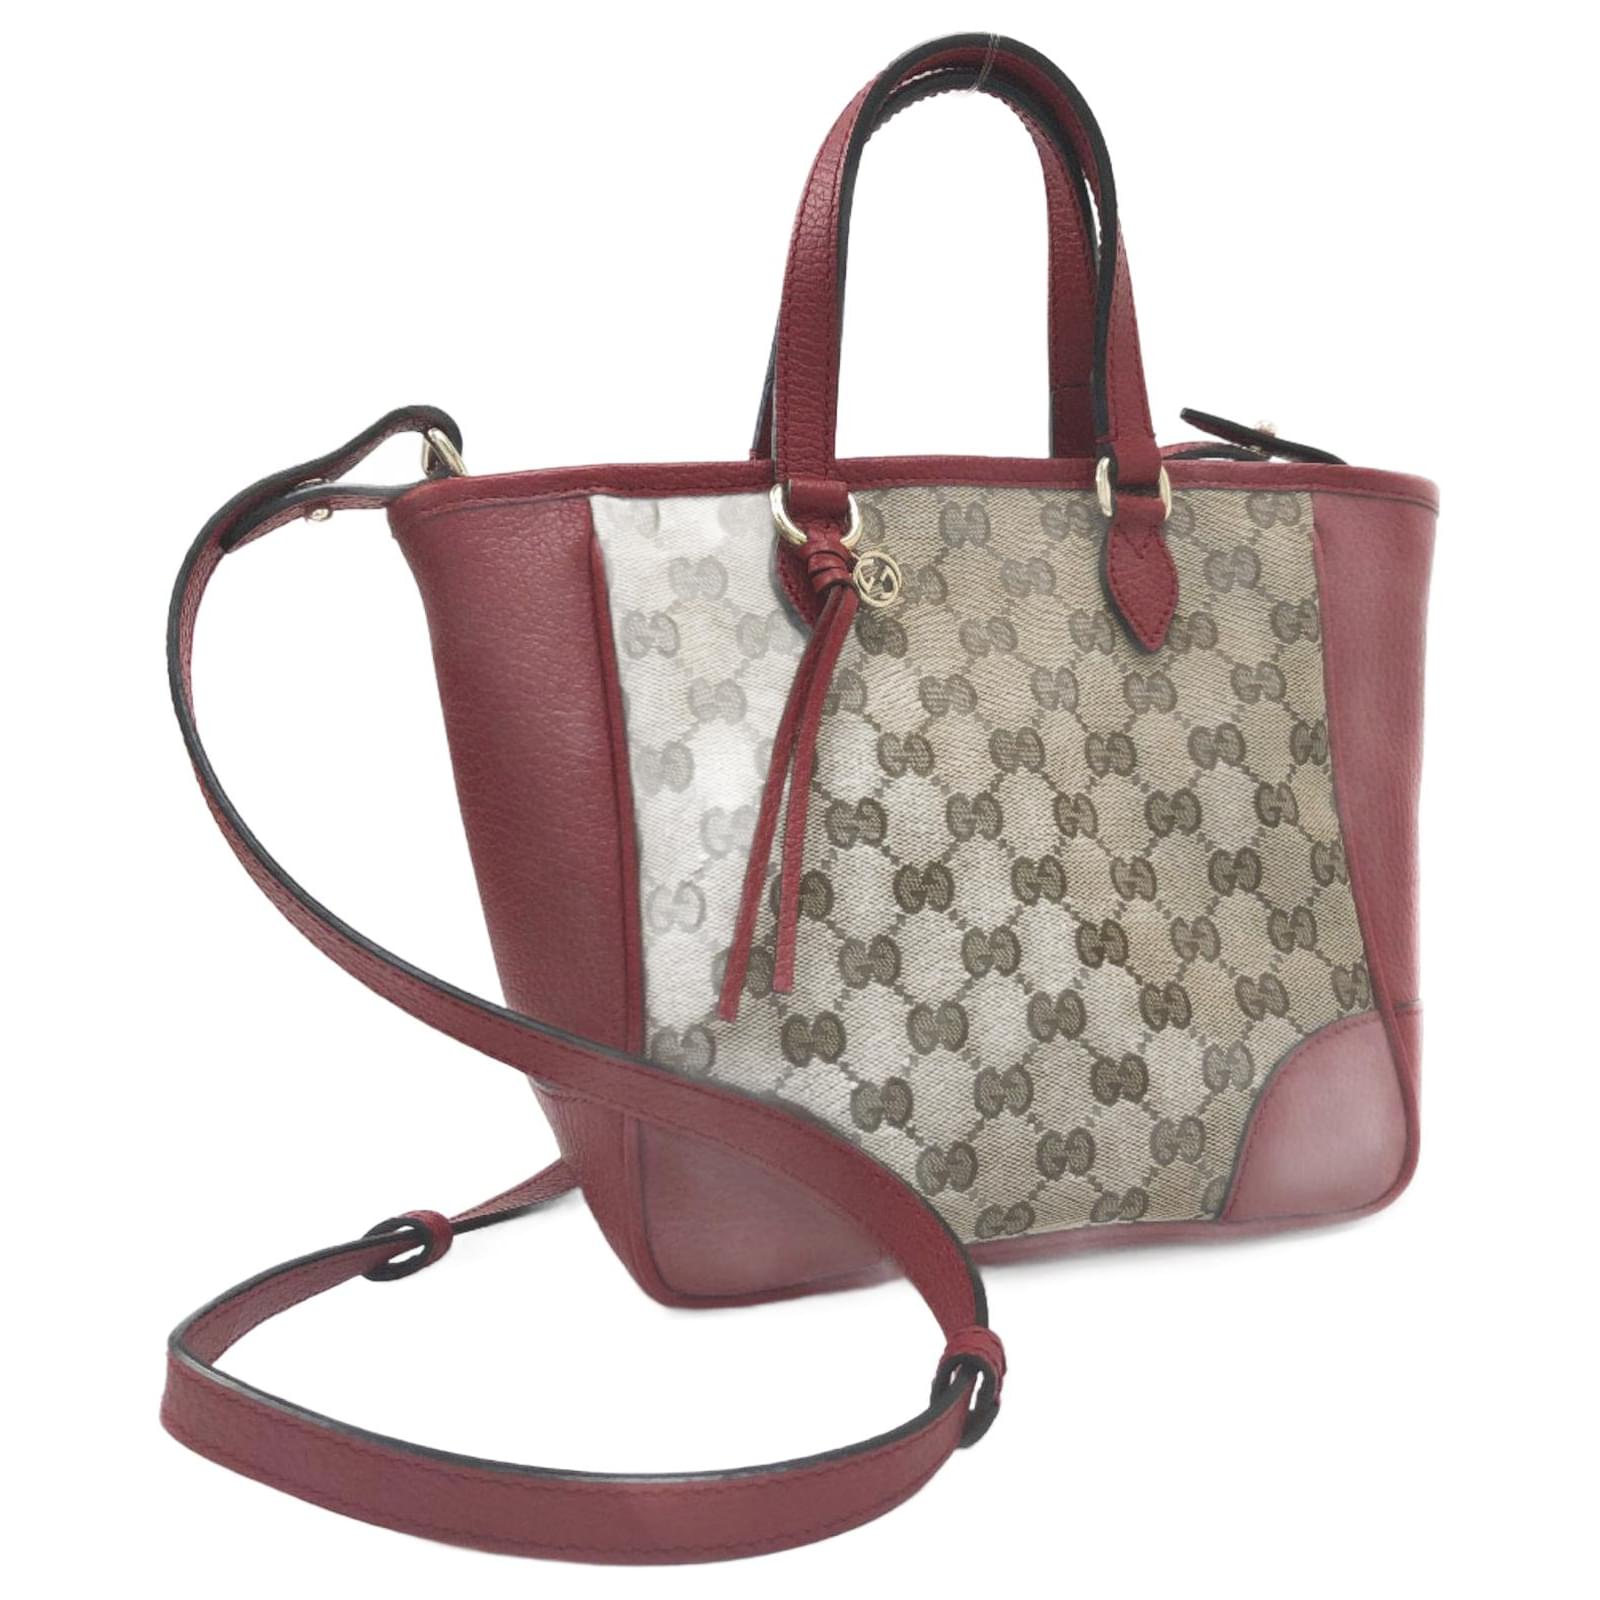 Gucci GG Canvas Small Bree Tote Bag - Pink Totes, Handbags